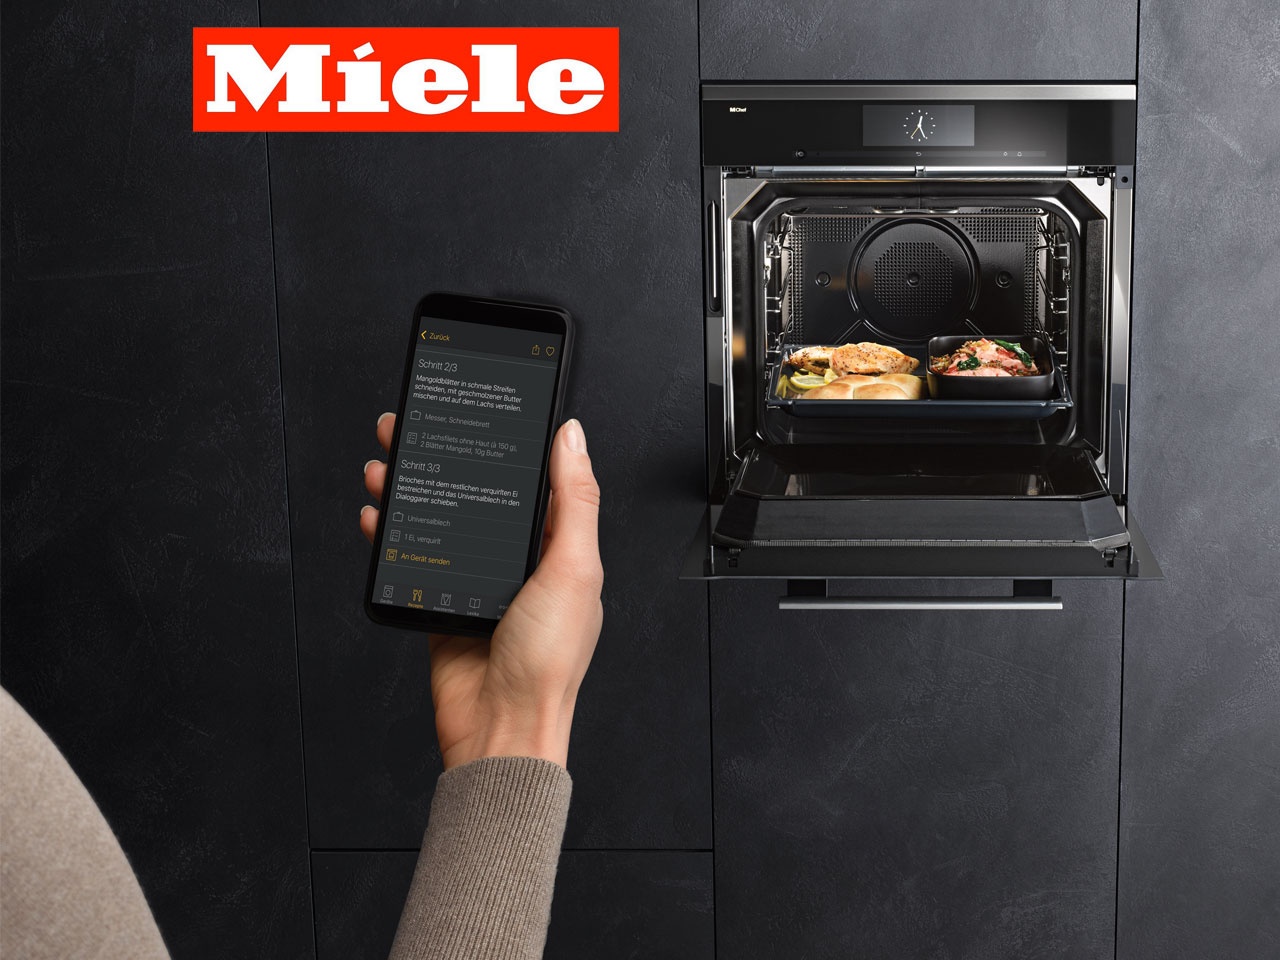 MIELE avec Dialog Oven et sa technologie M-Chef, rentre dans l’histoire